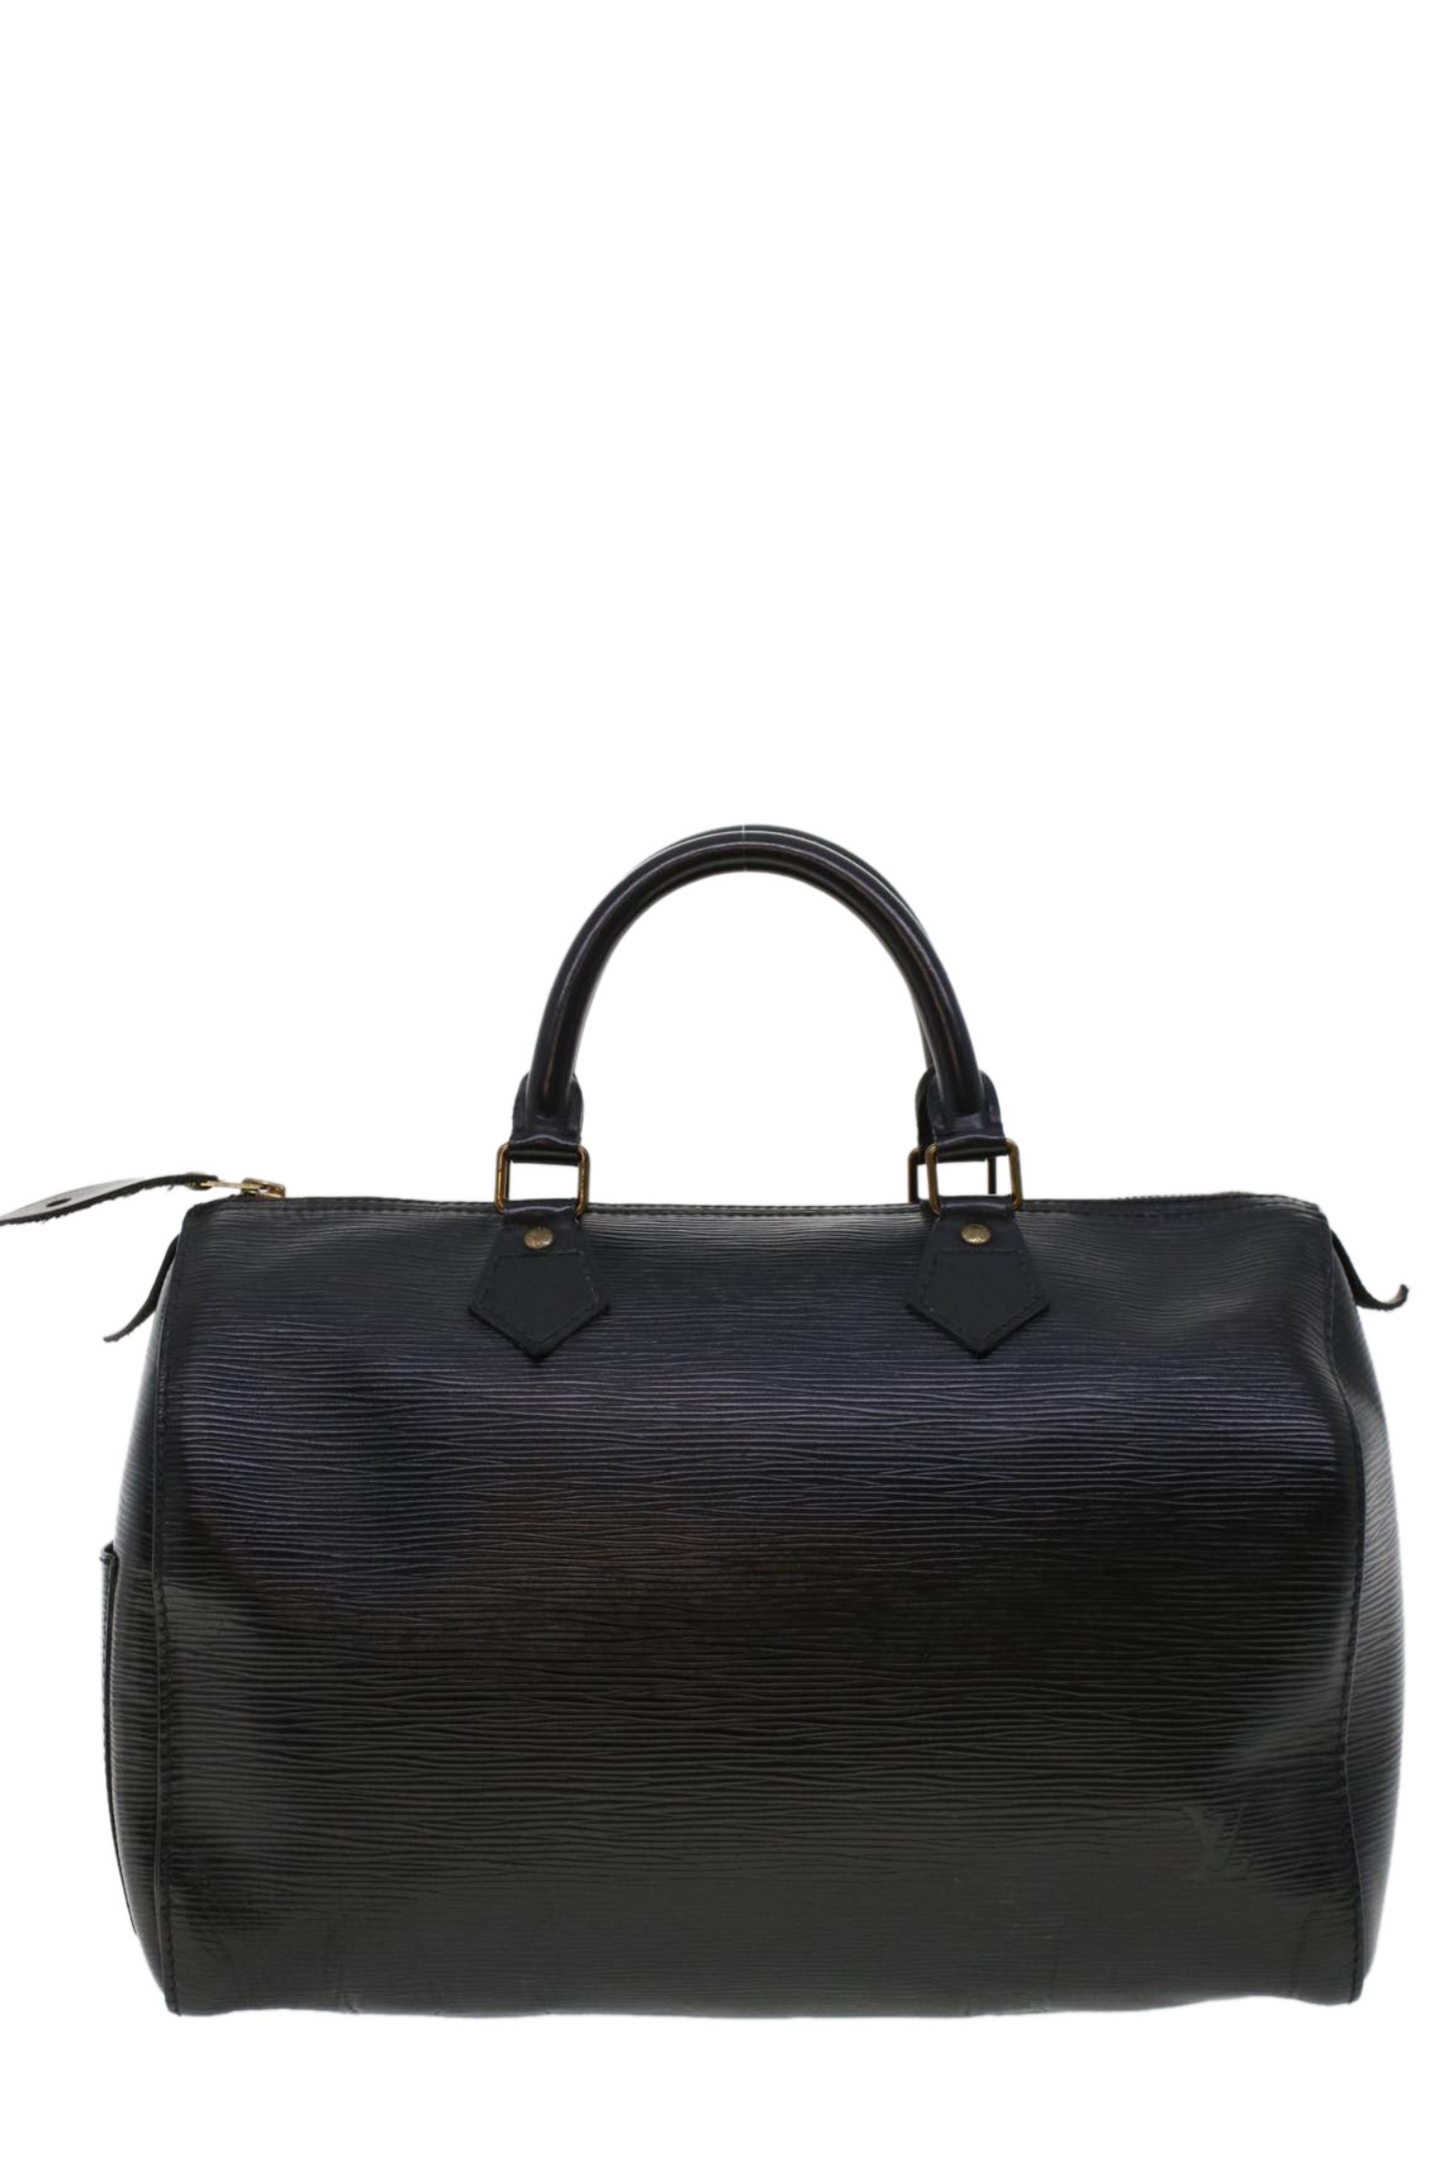 Louis Vuitton Epi Leather Speedy 30 Handbag